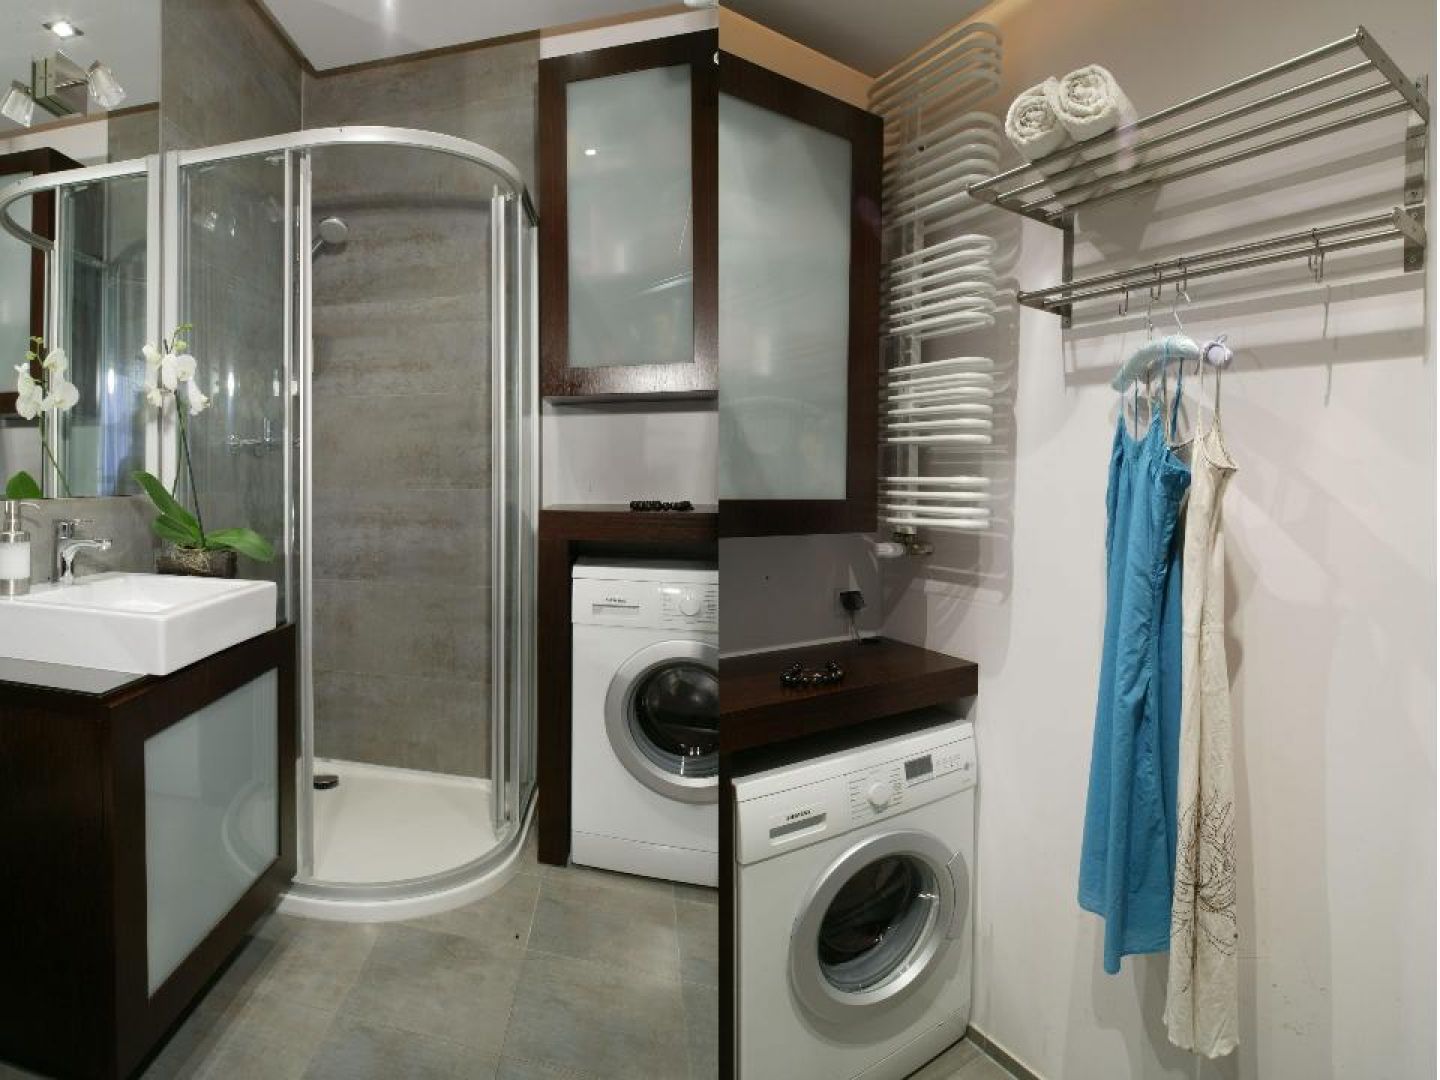 Ванная комната с душевой кабиной и стиральной машиной и унитазом маленькой площади